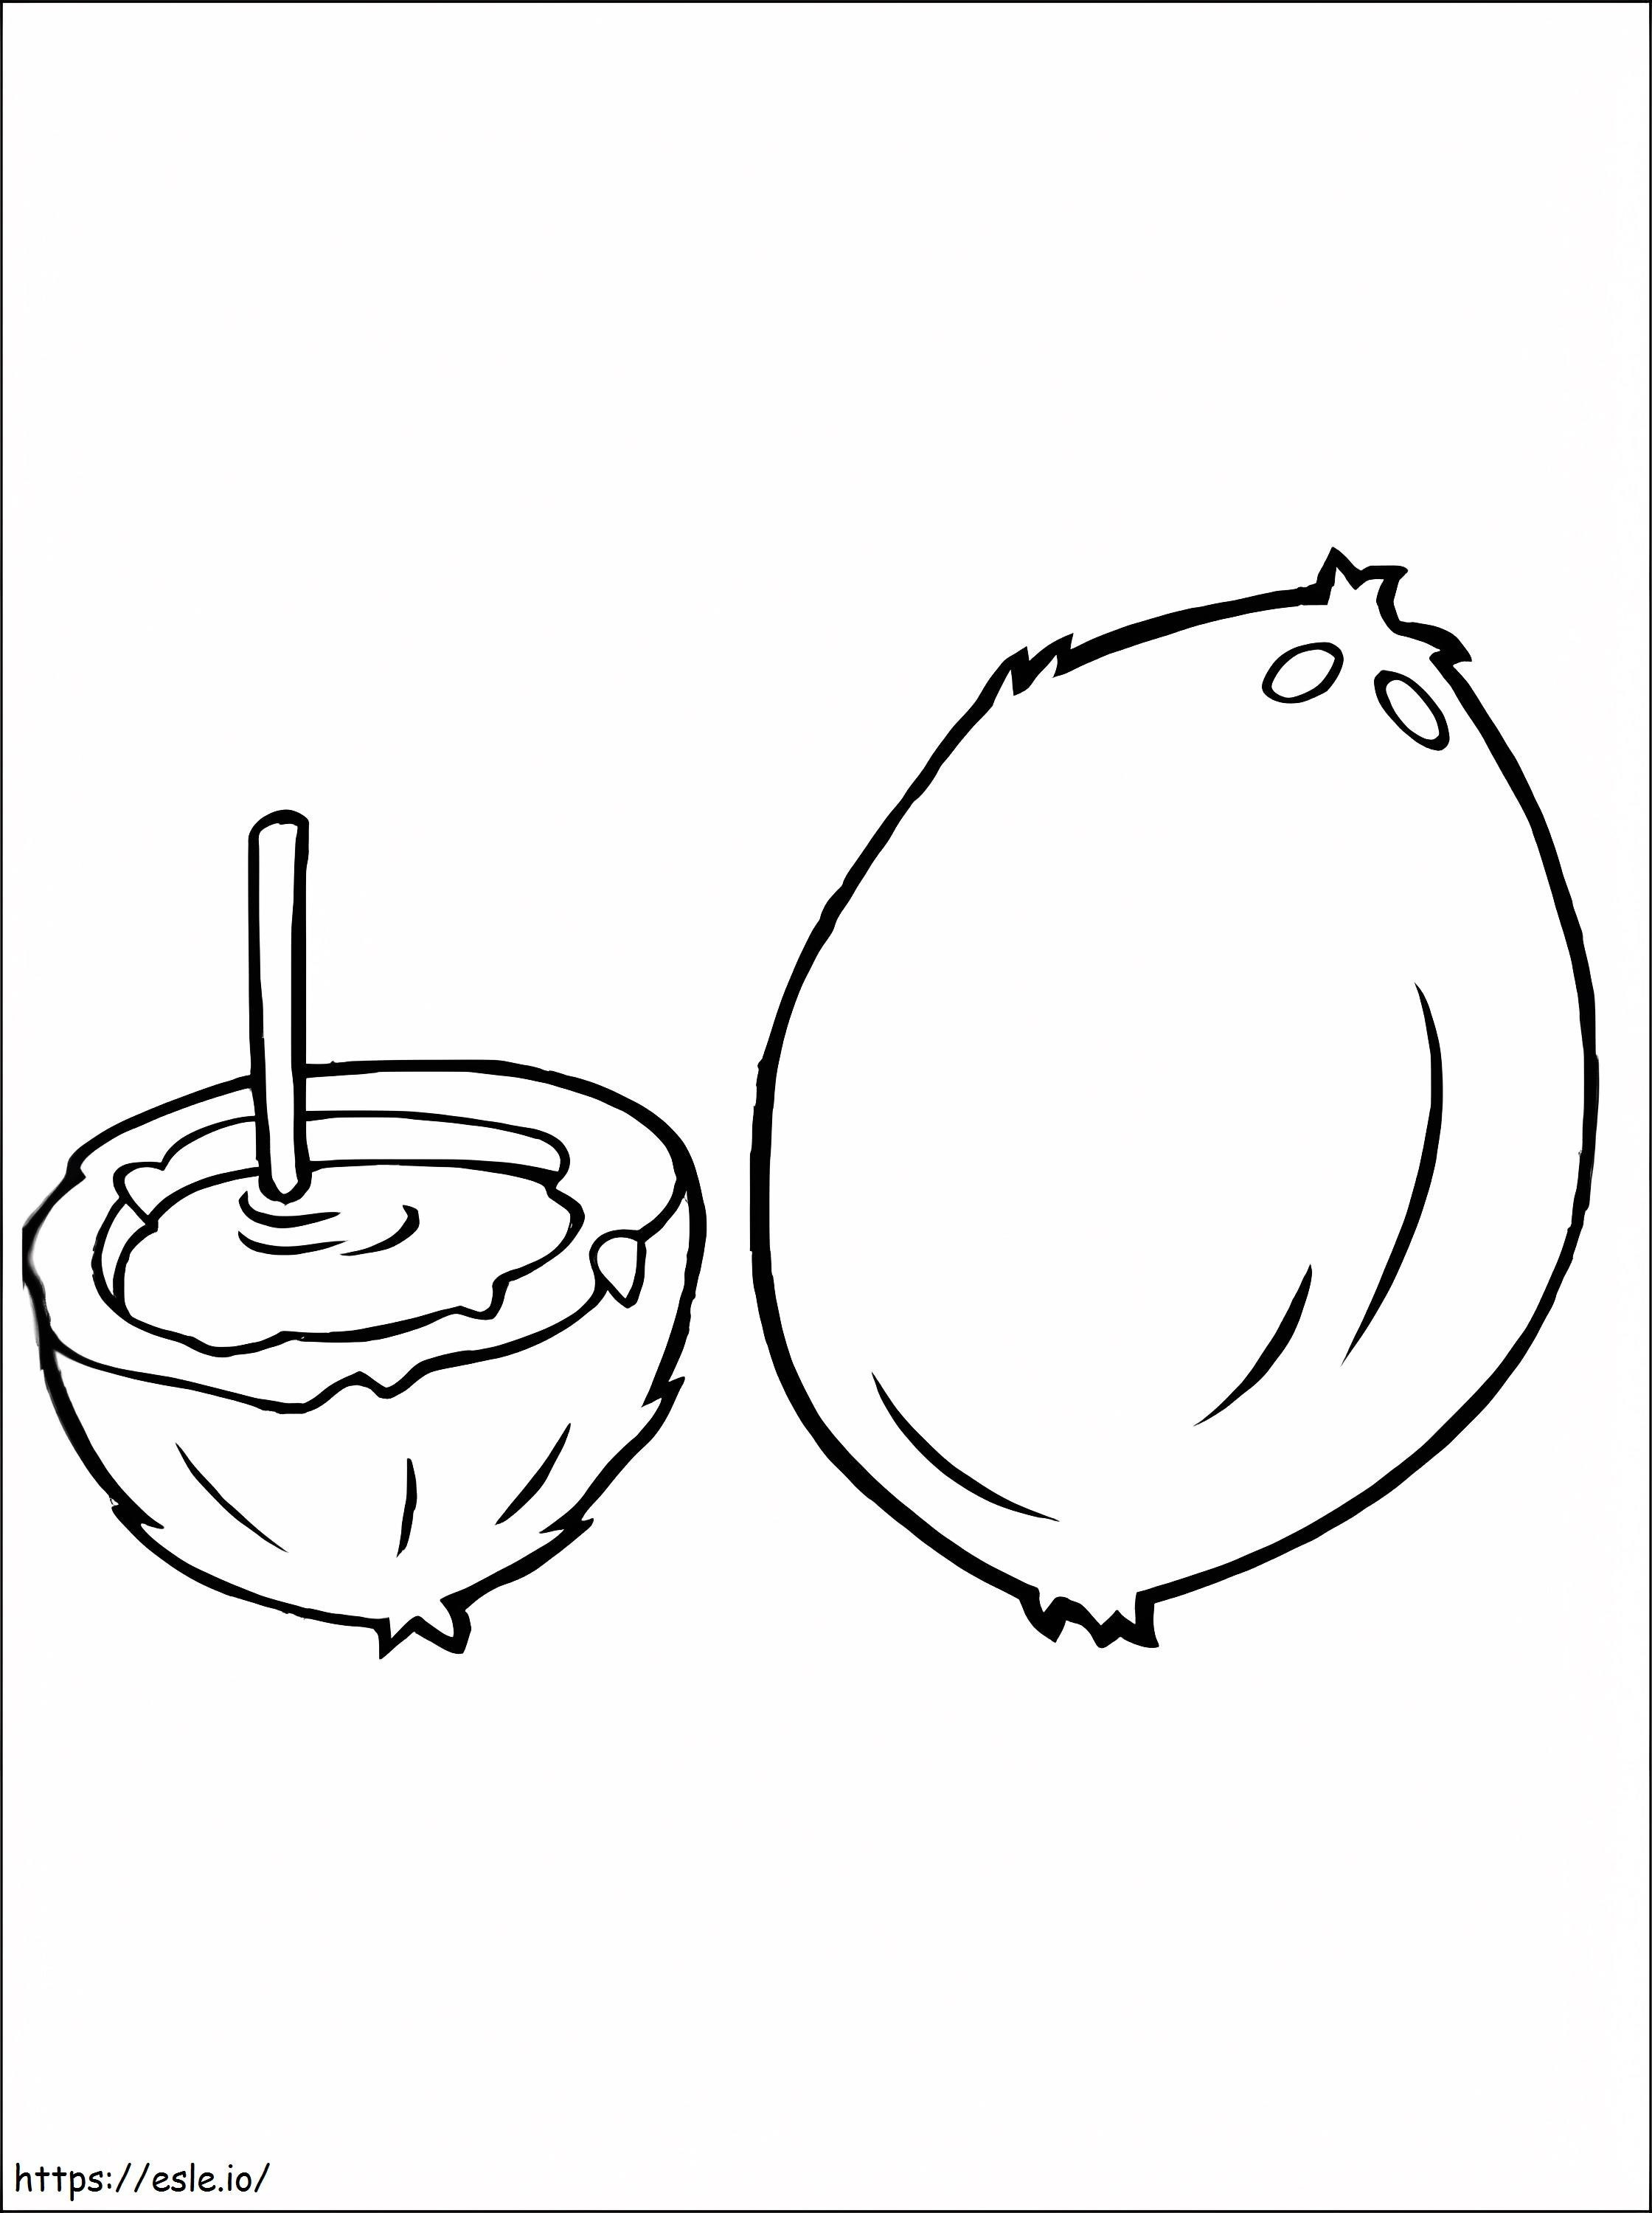 Kokosnuss und Trinkkokosnuss ausmalbilder